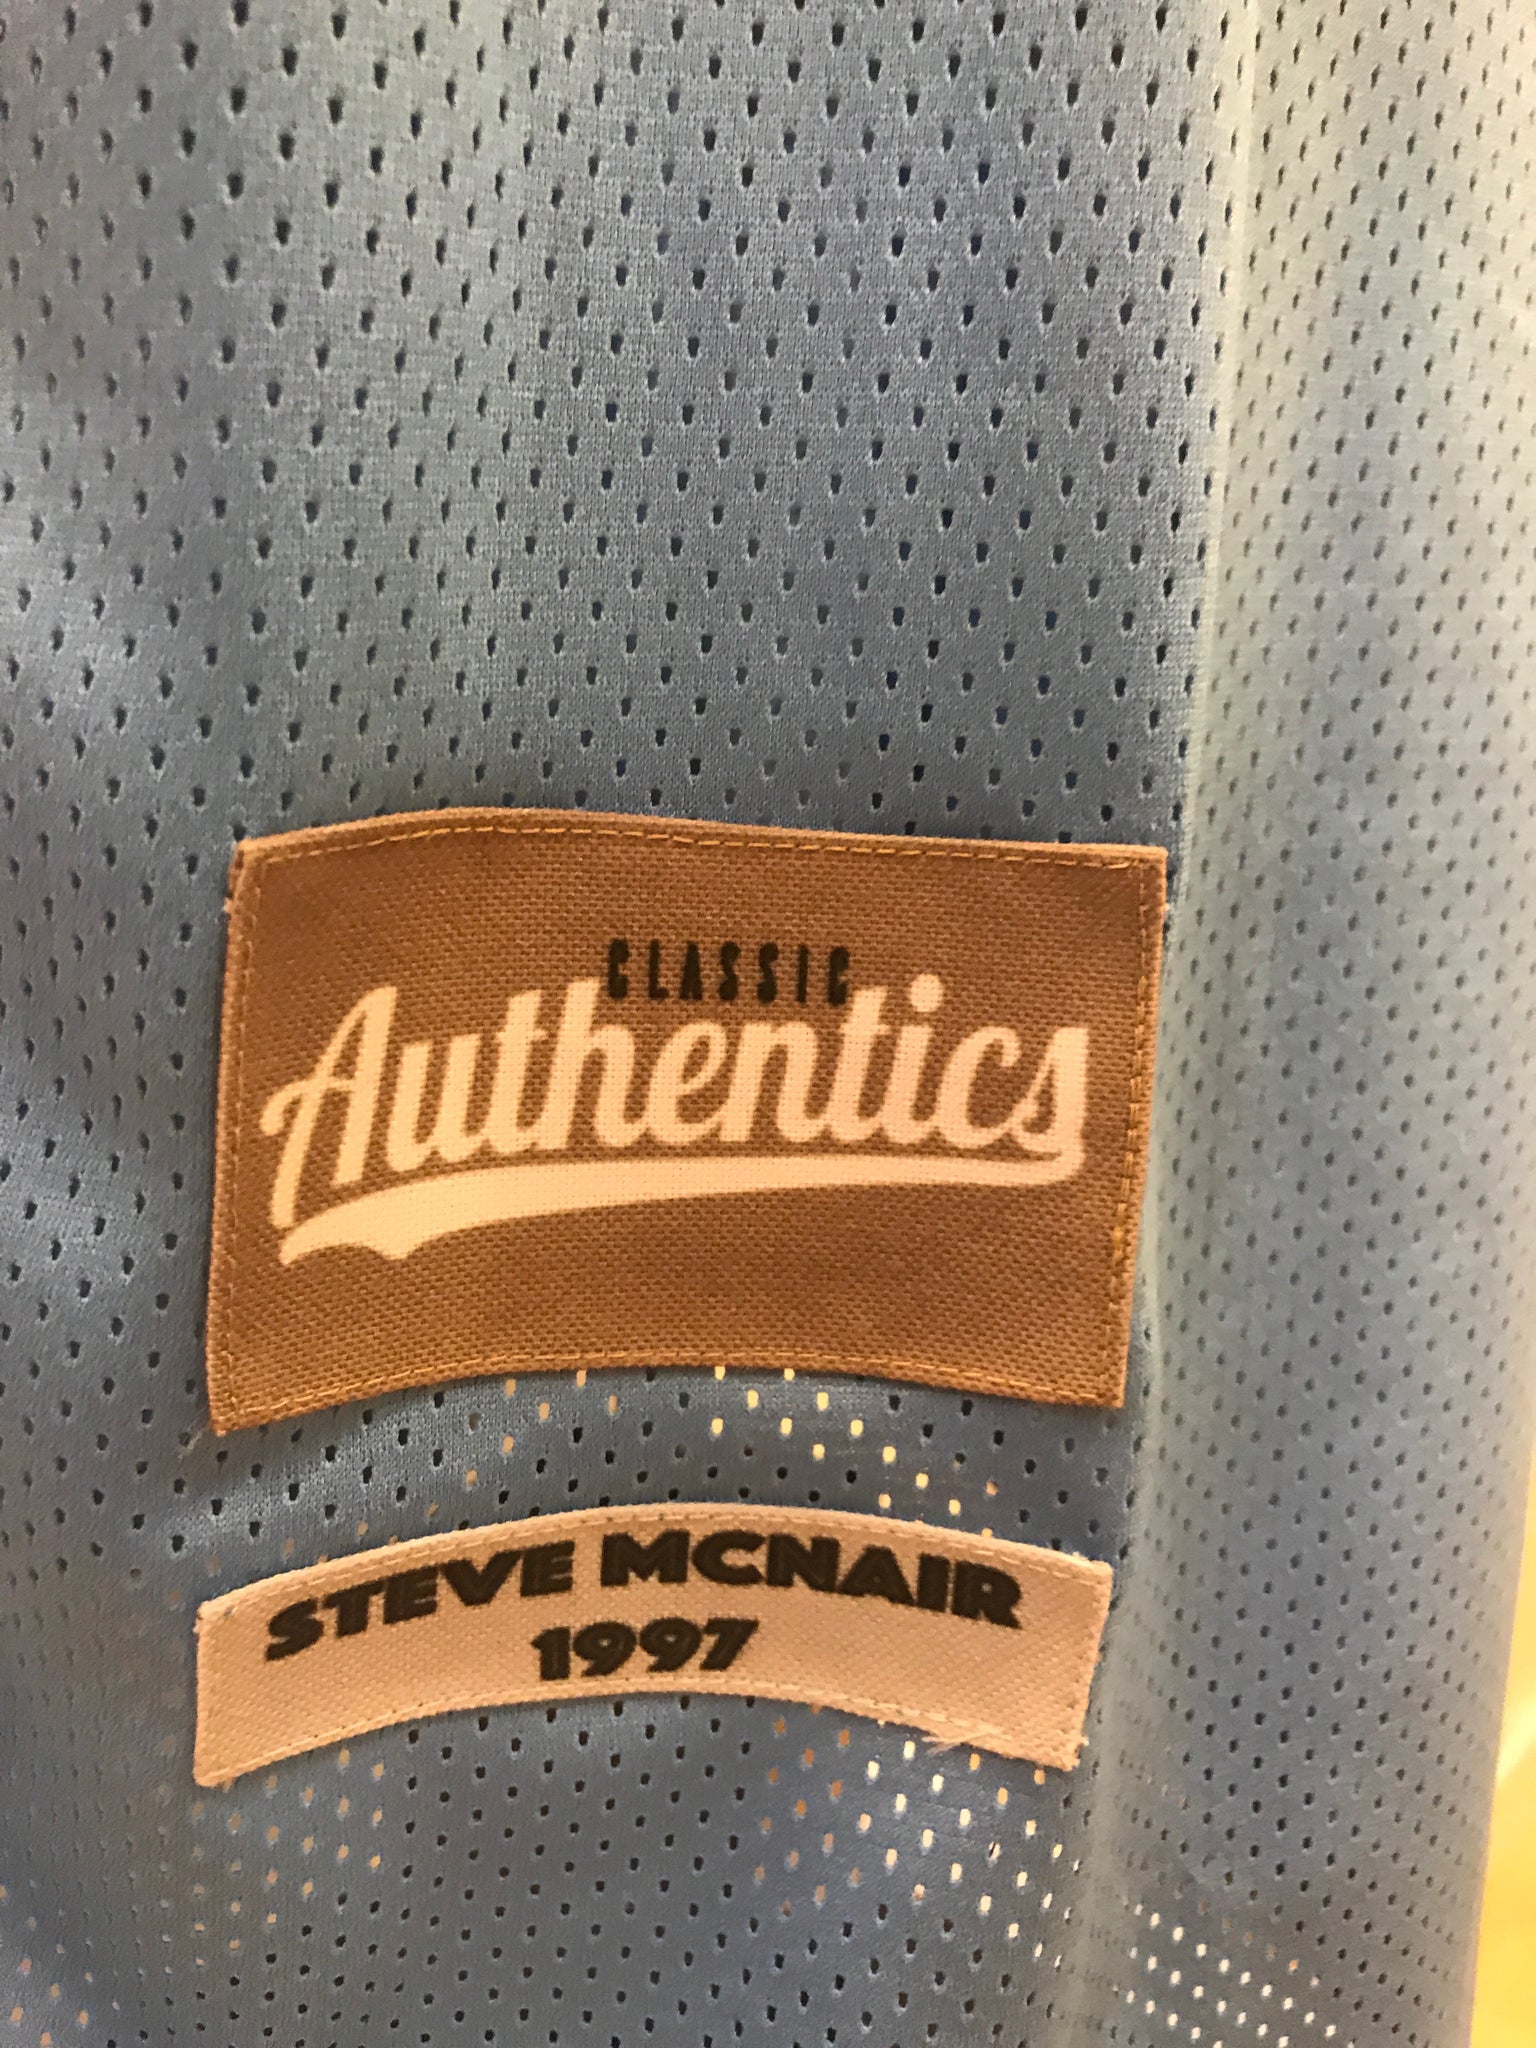 Steve McNair Jerseys, Steve McNair Shirts, Apparel, Gear